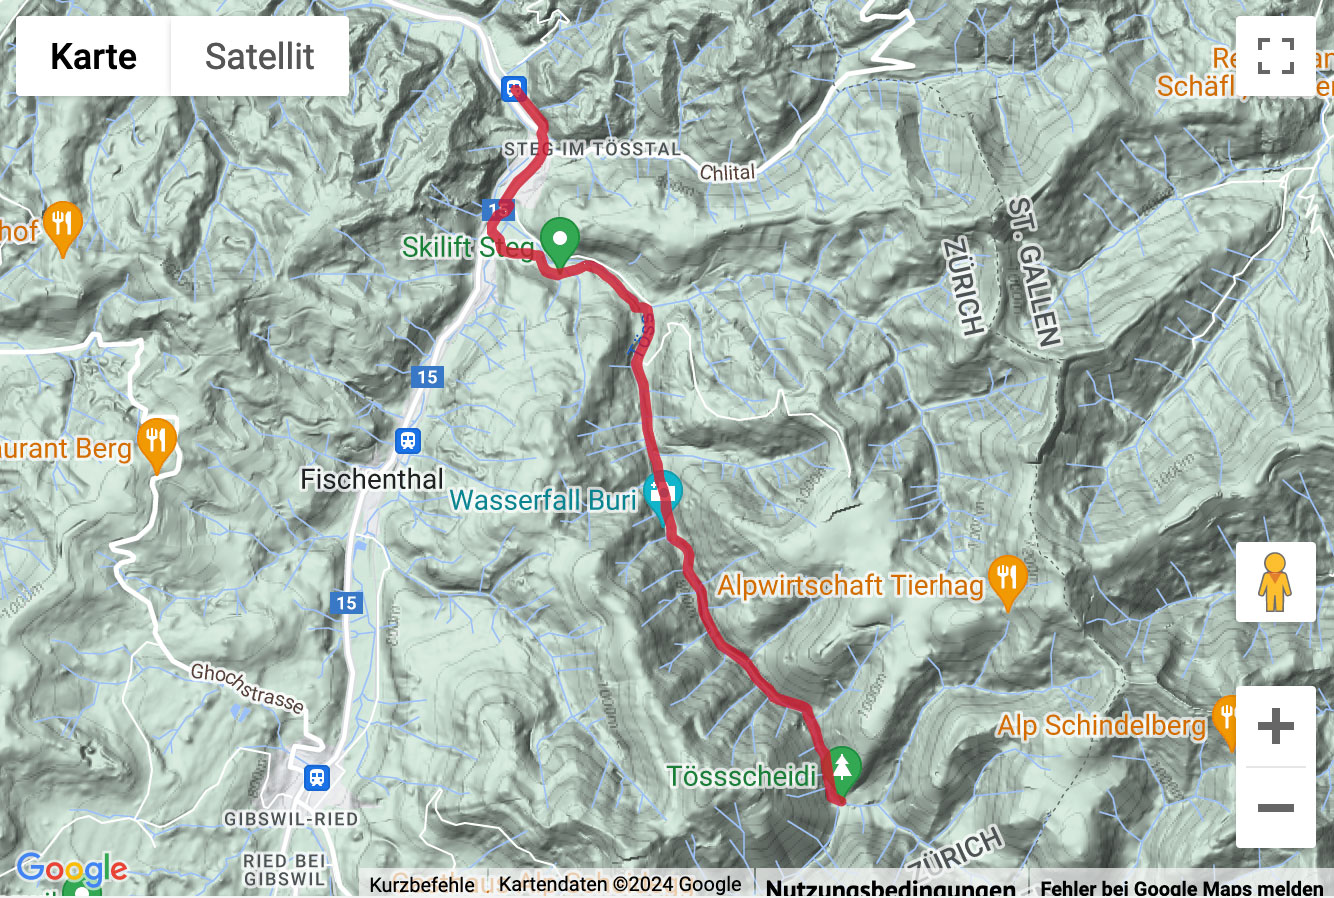 Übersichts-Routenkarte für die Wanderung von Steg im Tösstal zur Tössscheidi